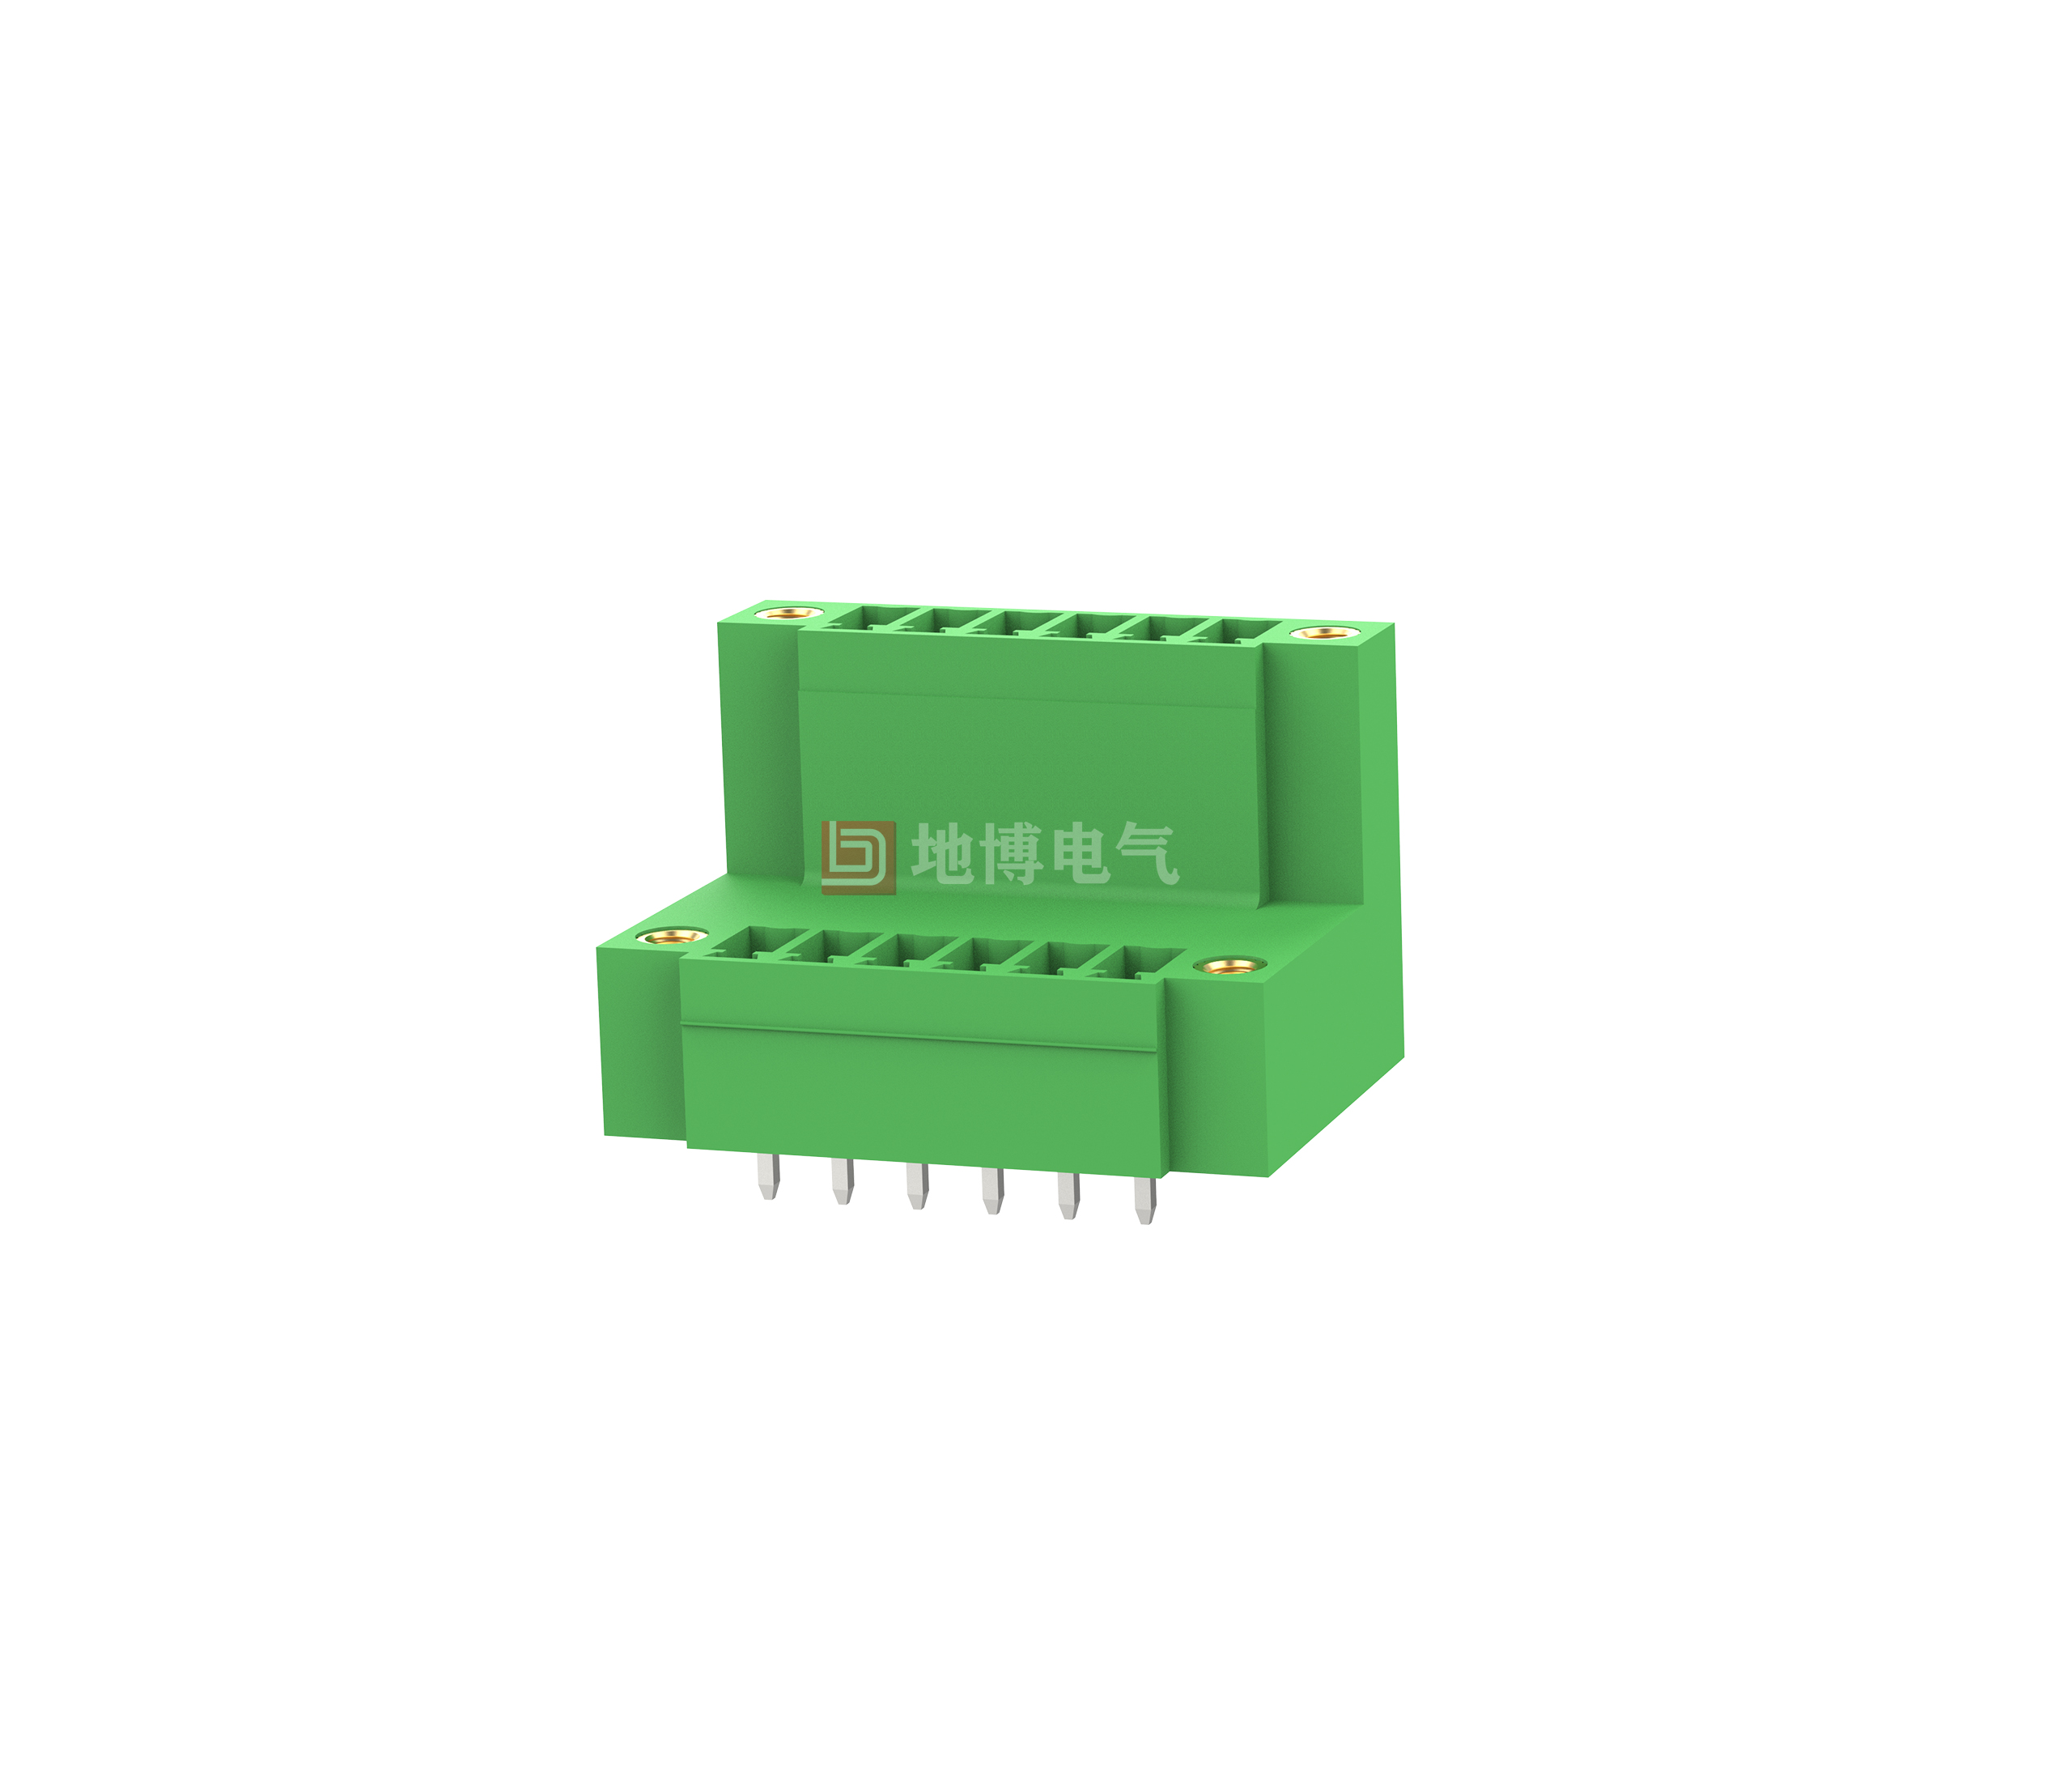 PCB socket DB2EVTM-3.81